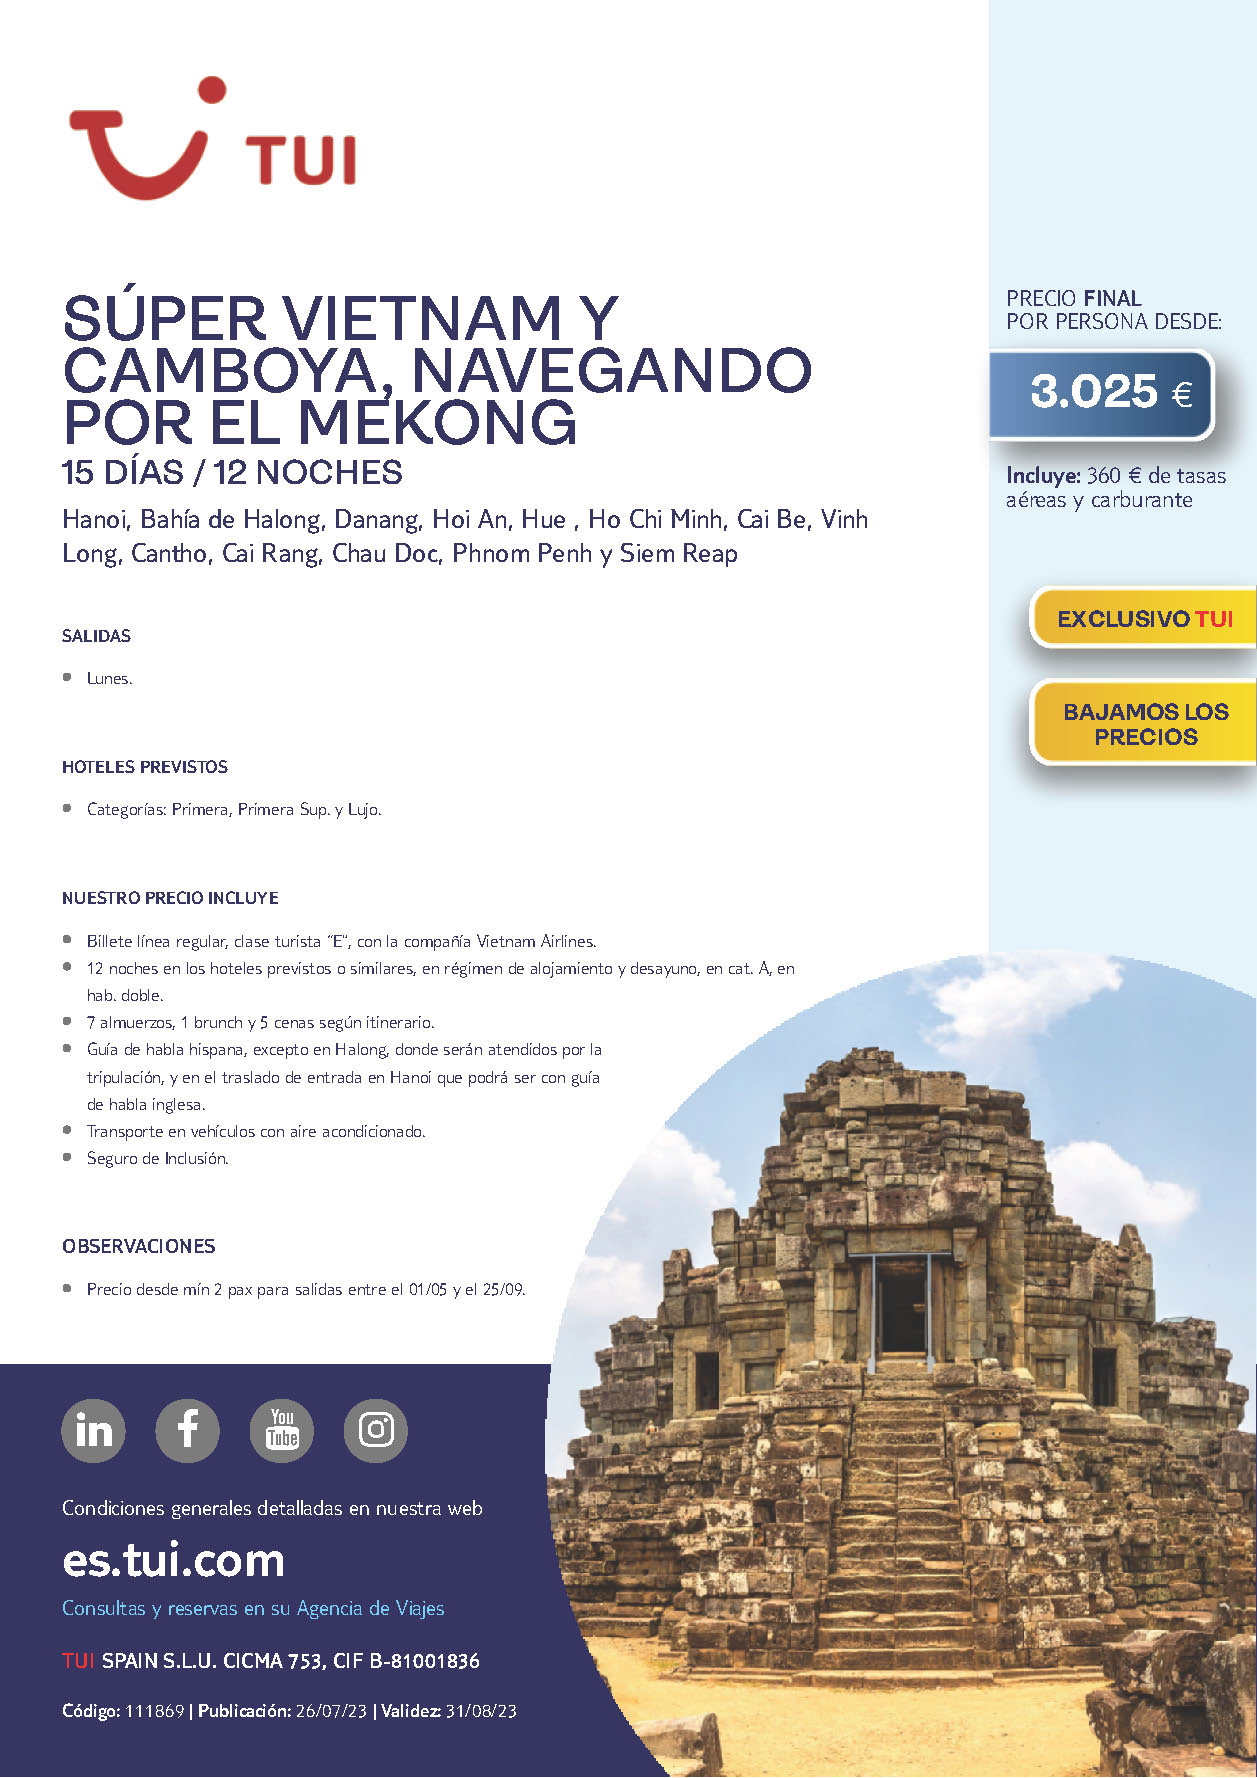 Oferta TUI Vietnam y Camboya Mekong 15 dias 2023 salidas desde Madrid Barcelona Bilbao Valencia Malaga vuelos Vietnam Airlines